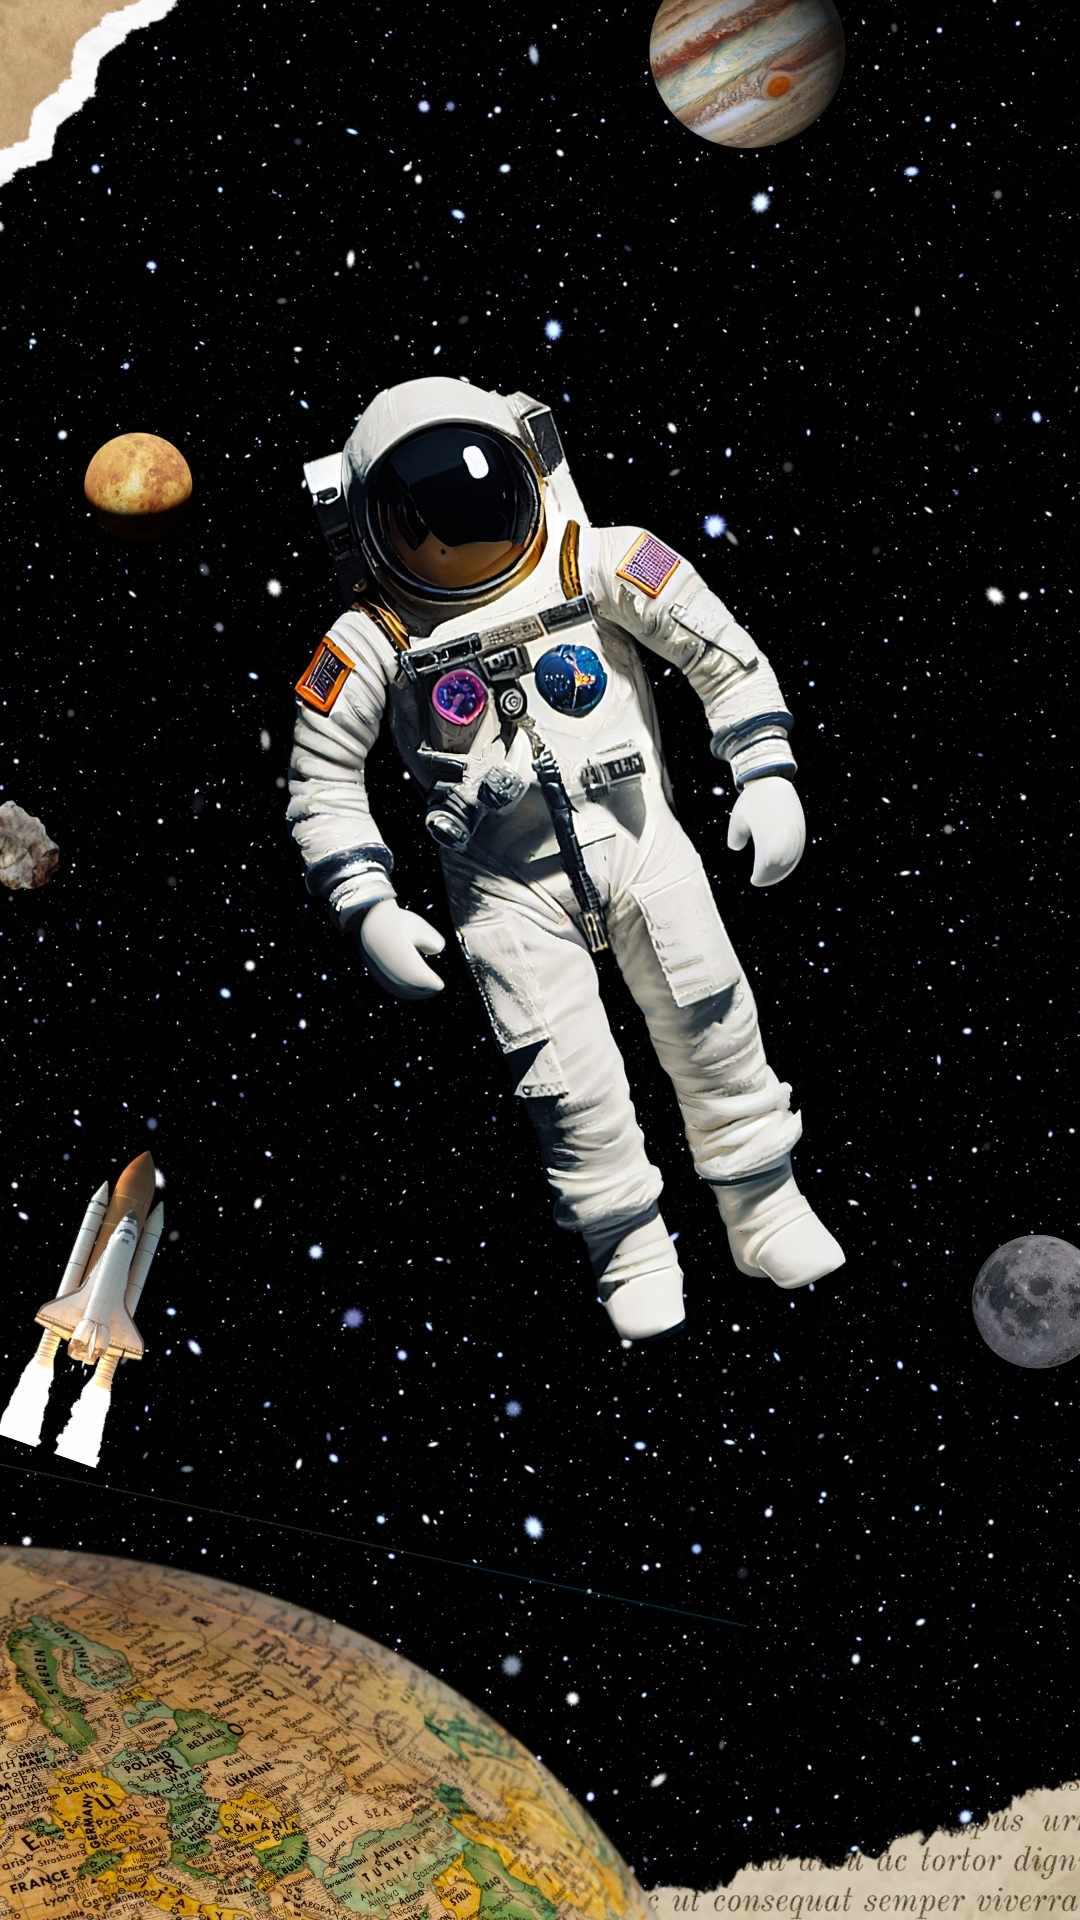 Wallpaper astronot karya @jetts014